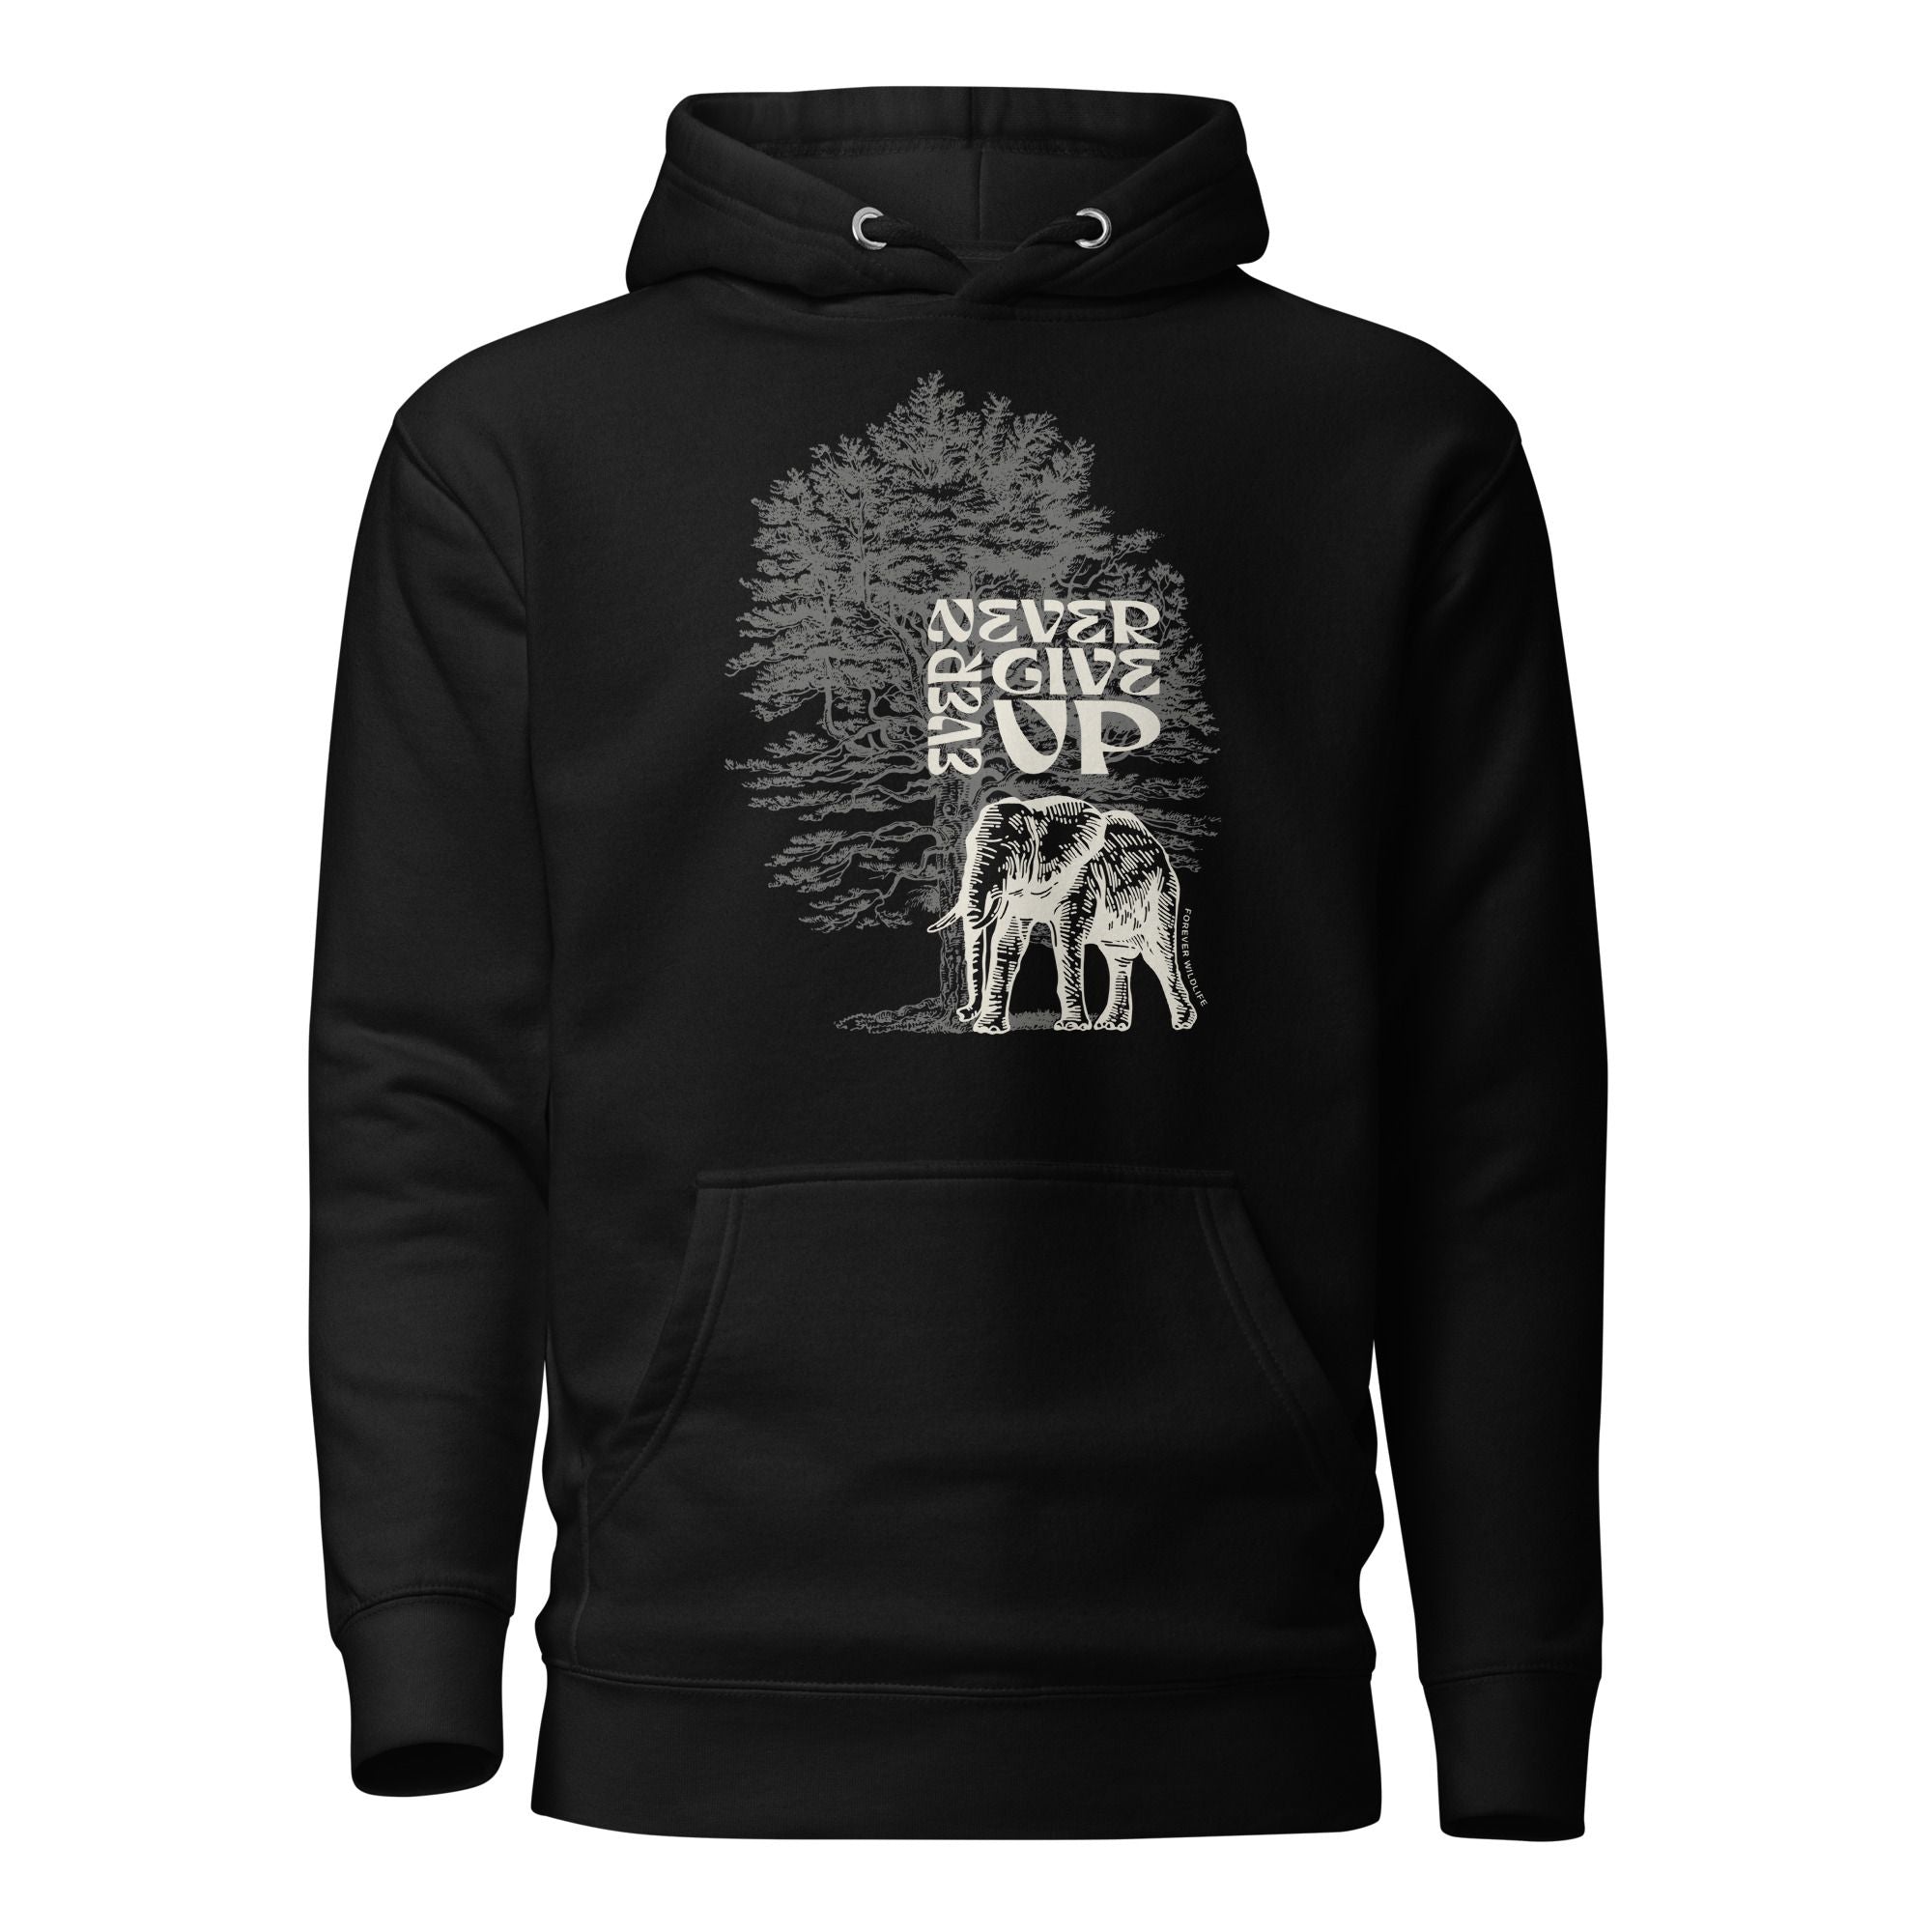 Elephant Hoodie in Black – Premium Wildlife Animal Inspirational Hoodie Design, part of Wildlife Hoodies & Clothing from Forever Wildlife